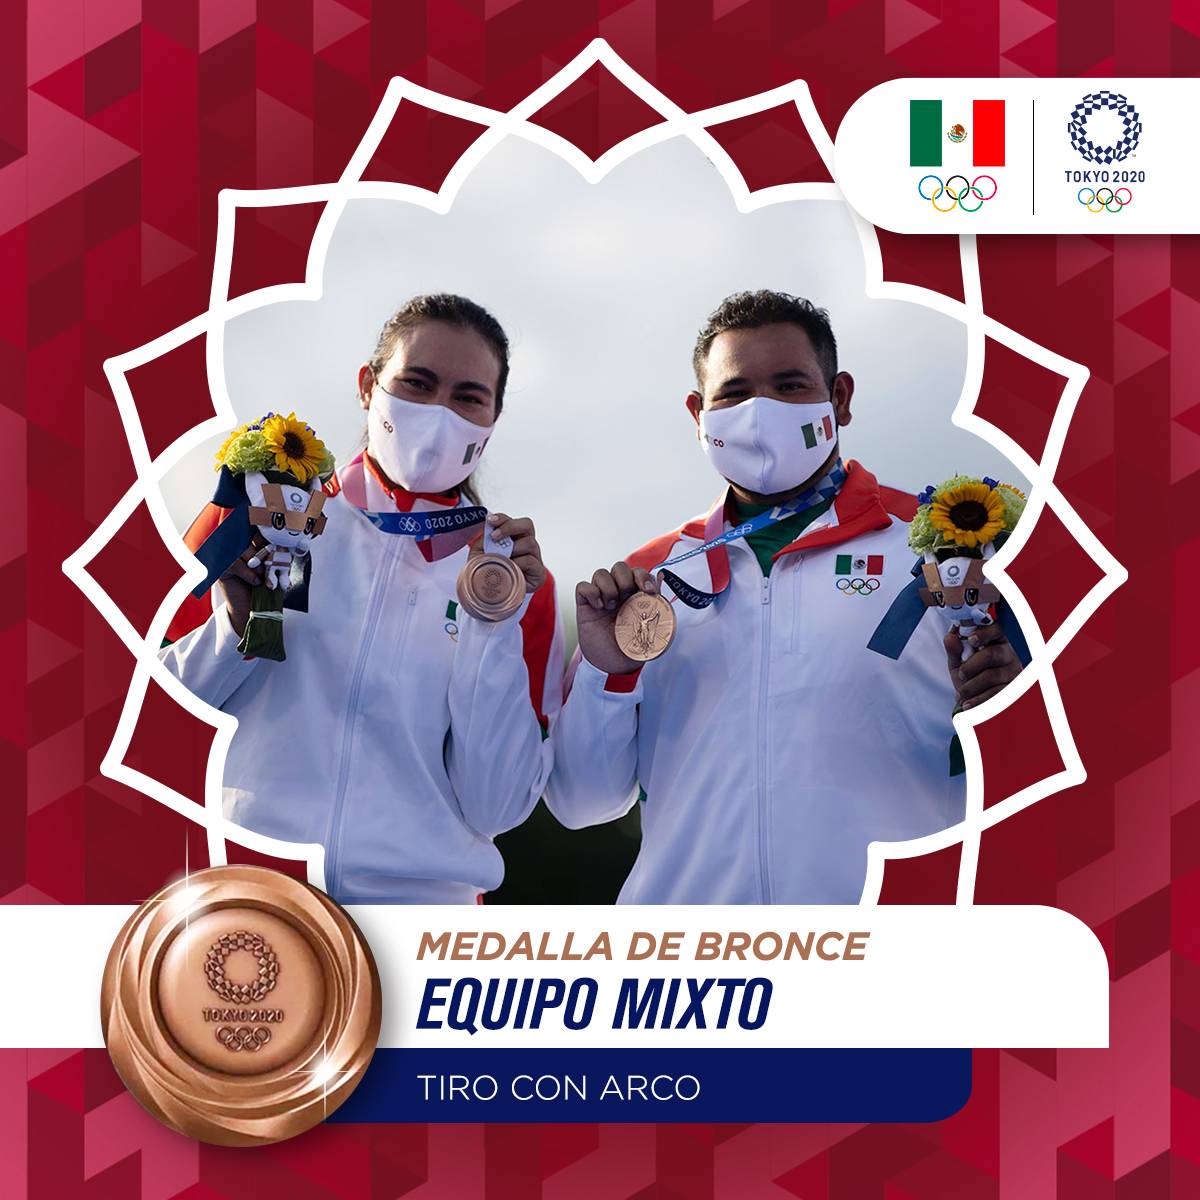 La primera alegría en la justa para la delegación mexicana llegó gracias a los arqueros Alejandra Valencia y Luis Álvarez, quienes ganaron la medalla de bronce en la modalidad mixta